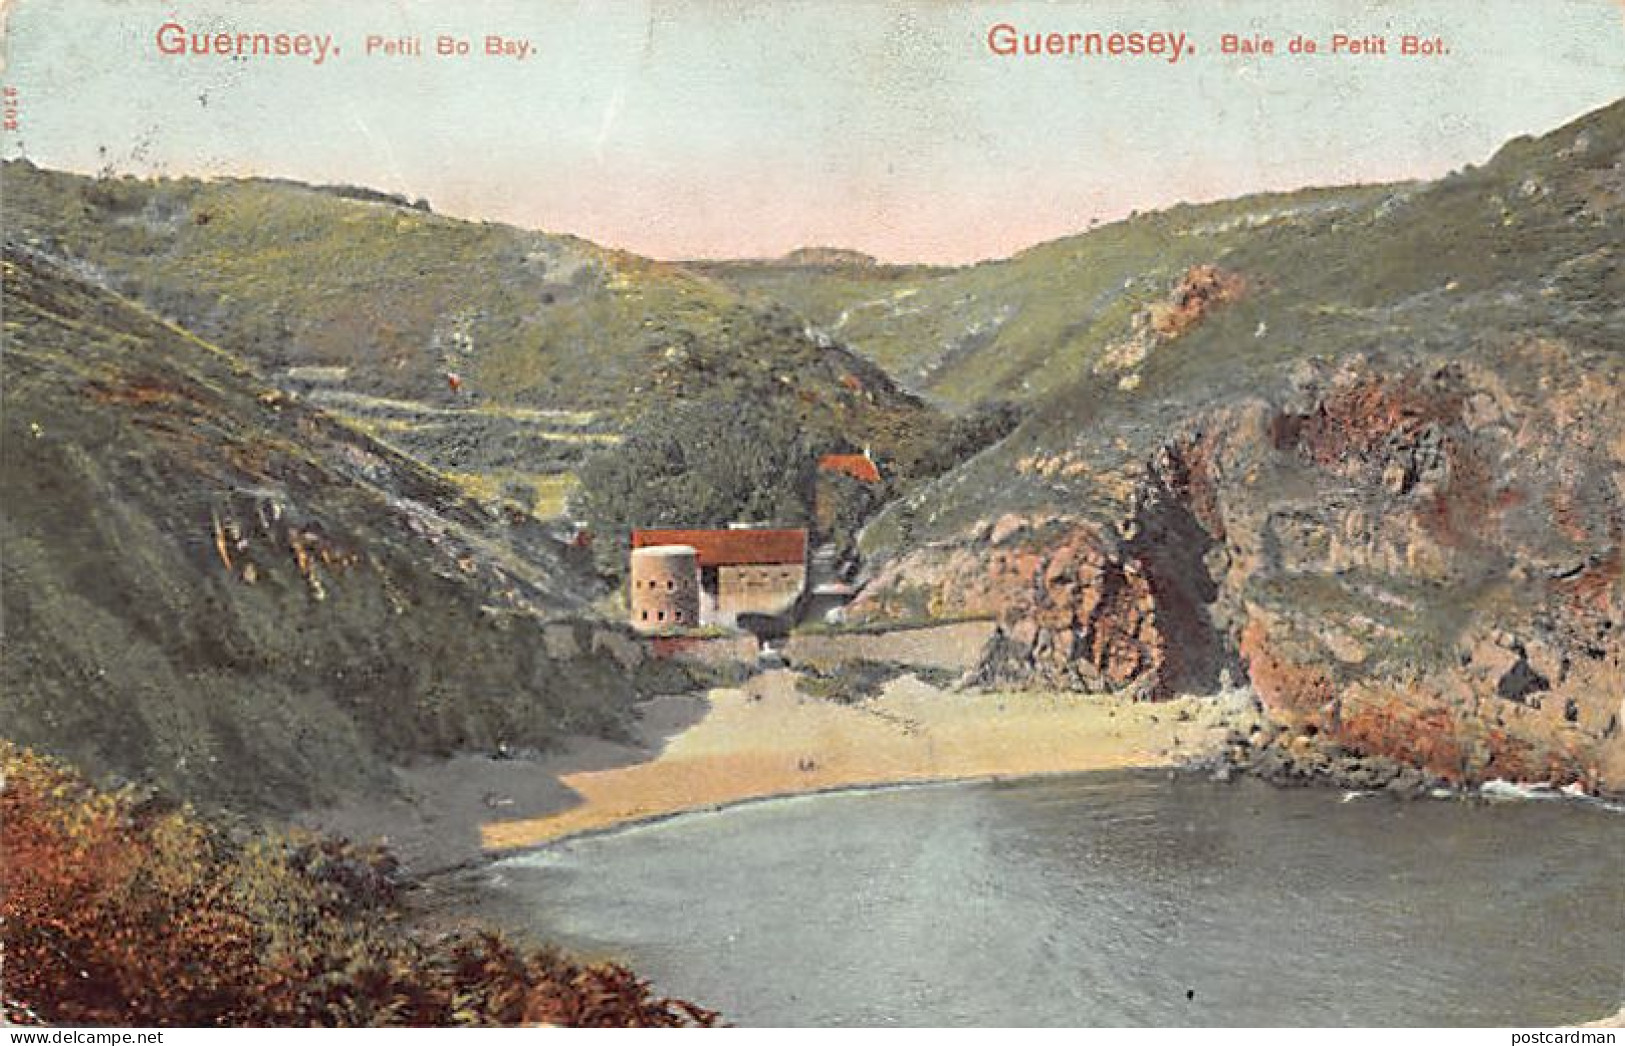 Guernsey - Petit Pot Bay - Publ. The Pictorial Stationery Co. Ltd. - Guernsey